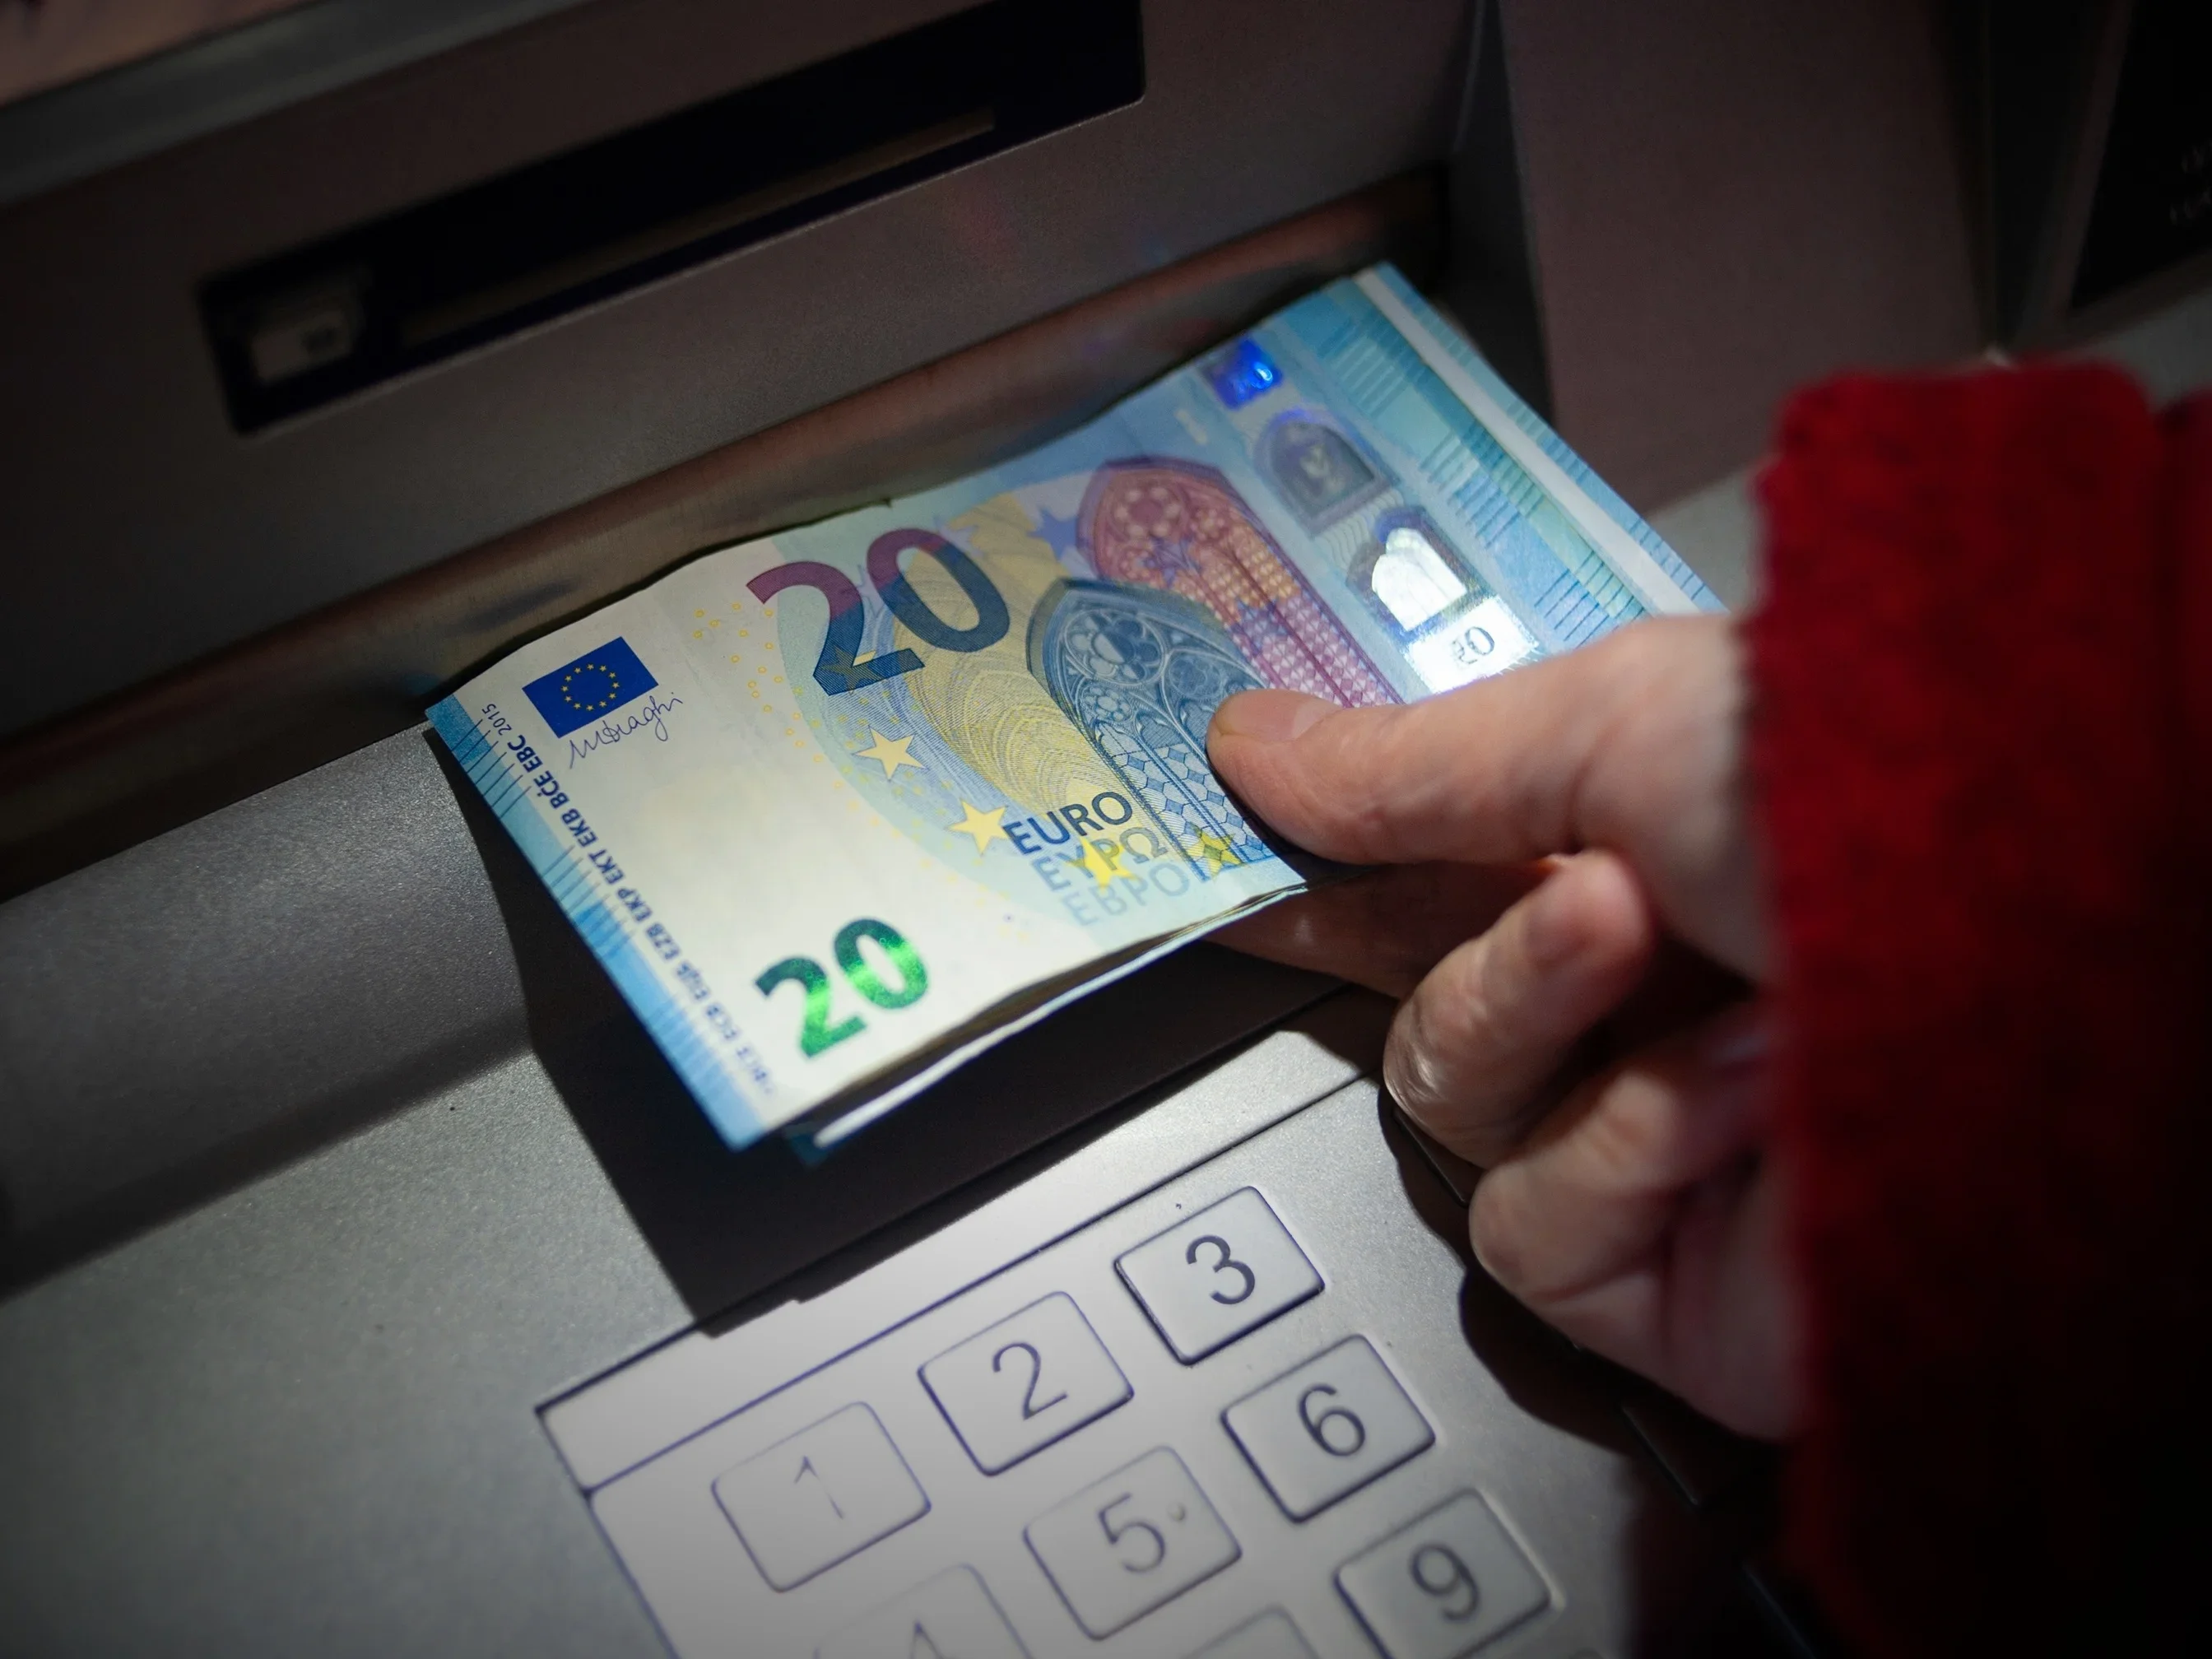 Phishing, Bank, Geldautomat, Bankautomat, Geld, Konto